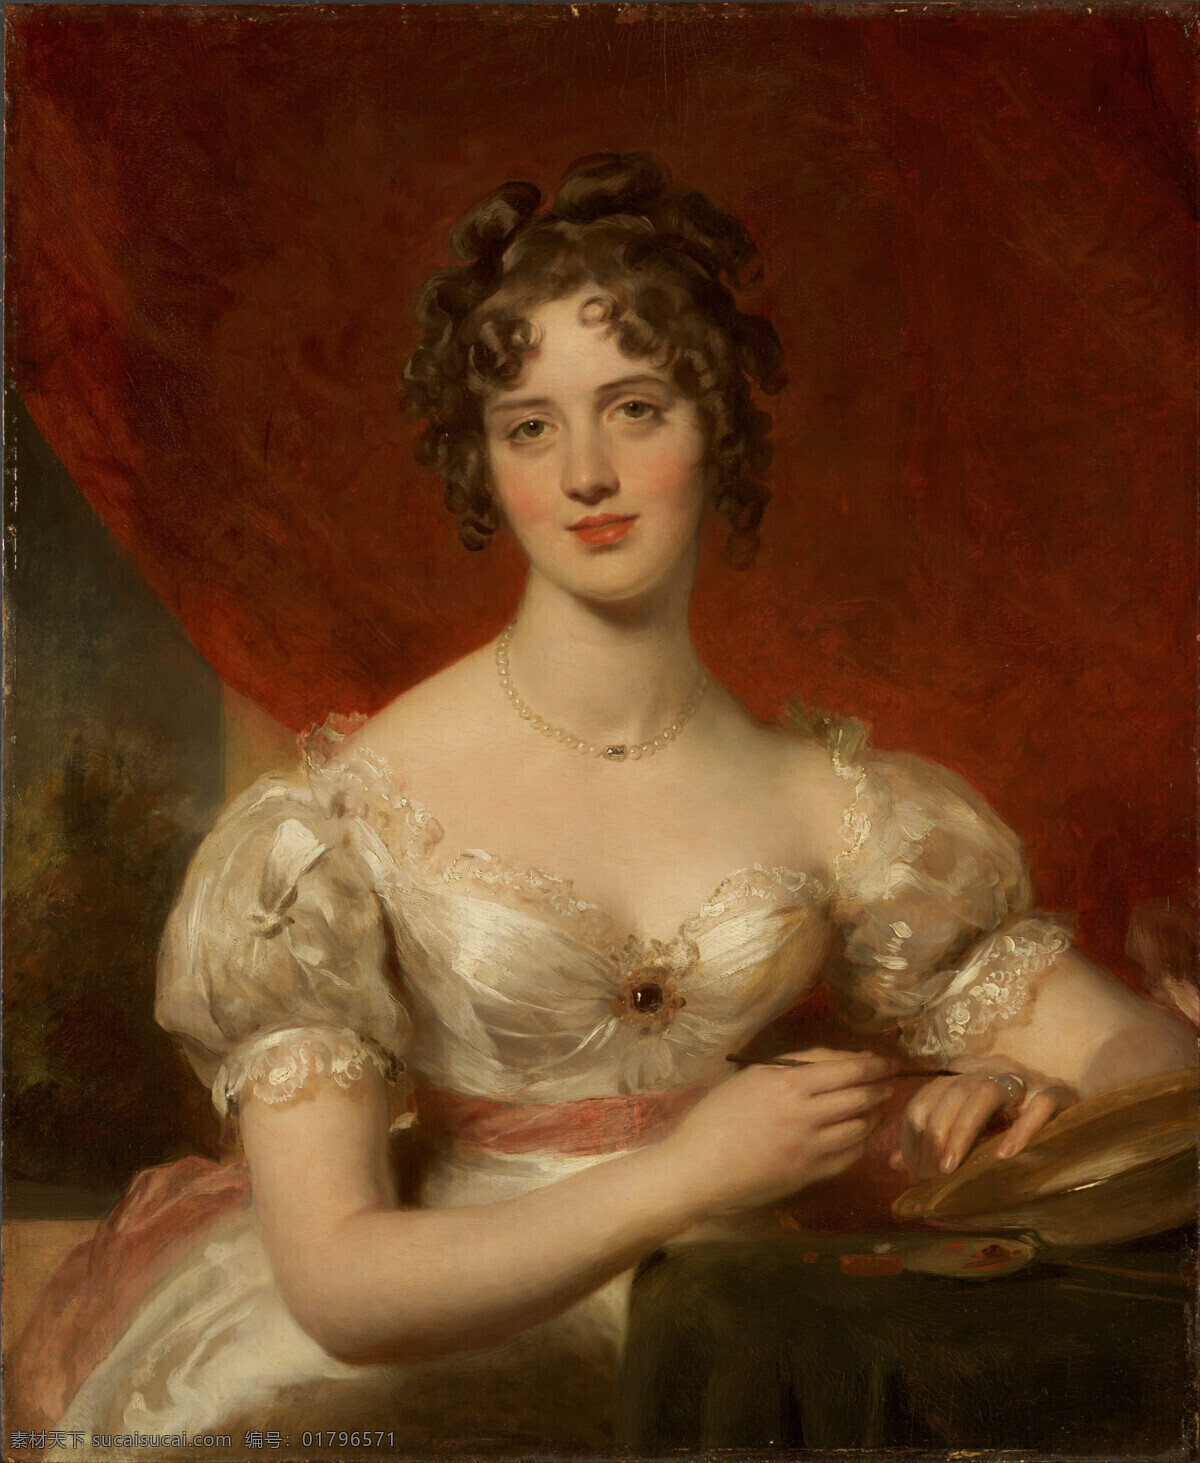 玛丽 安妮 布洛 赞 小姐 画像 托马斯 劳伦斯 作品 英国画家 弗雷德里克 亨 明 夫人 贵族千金 洛可可画派 19世纪油画 油画 绘画书法 文化艺术